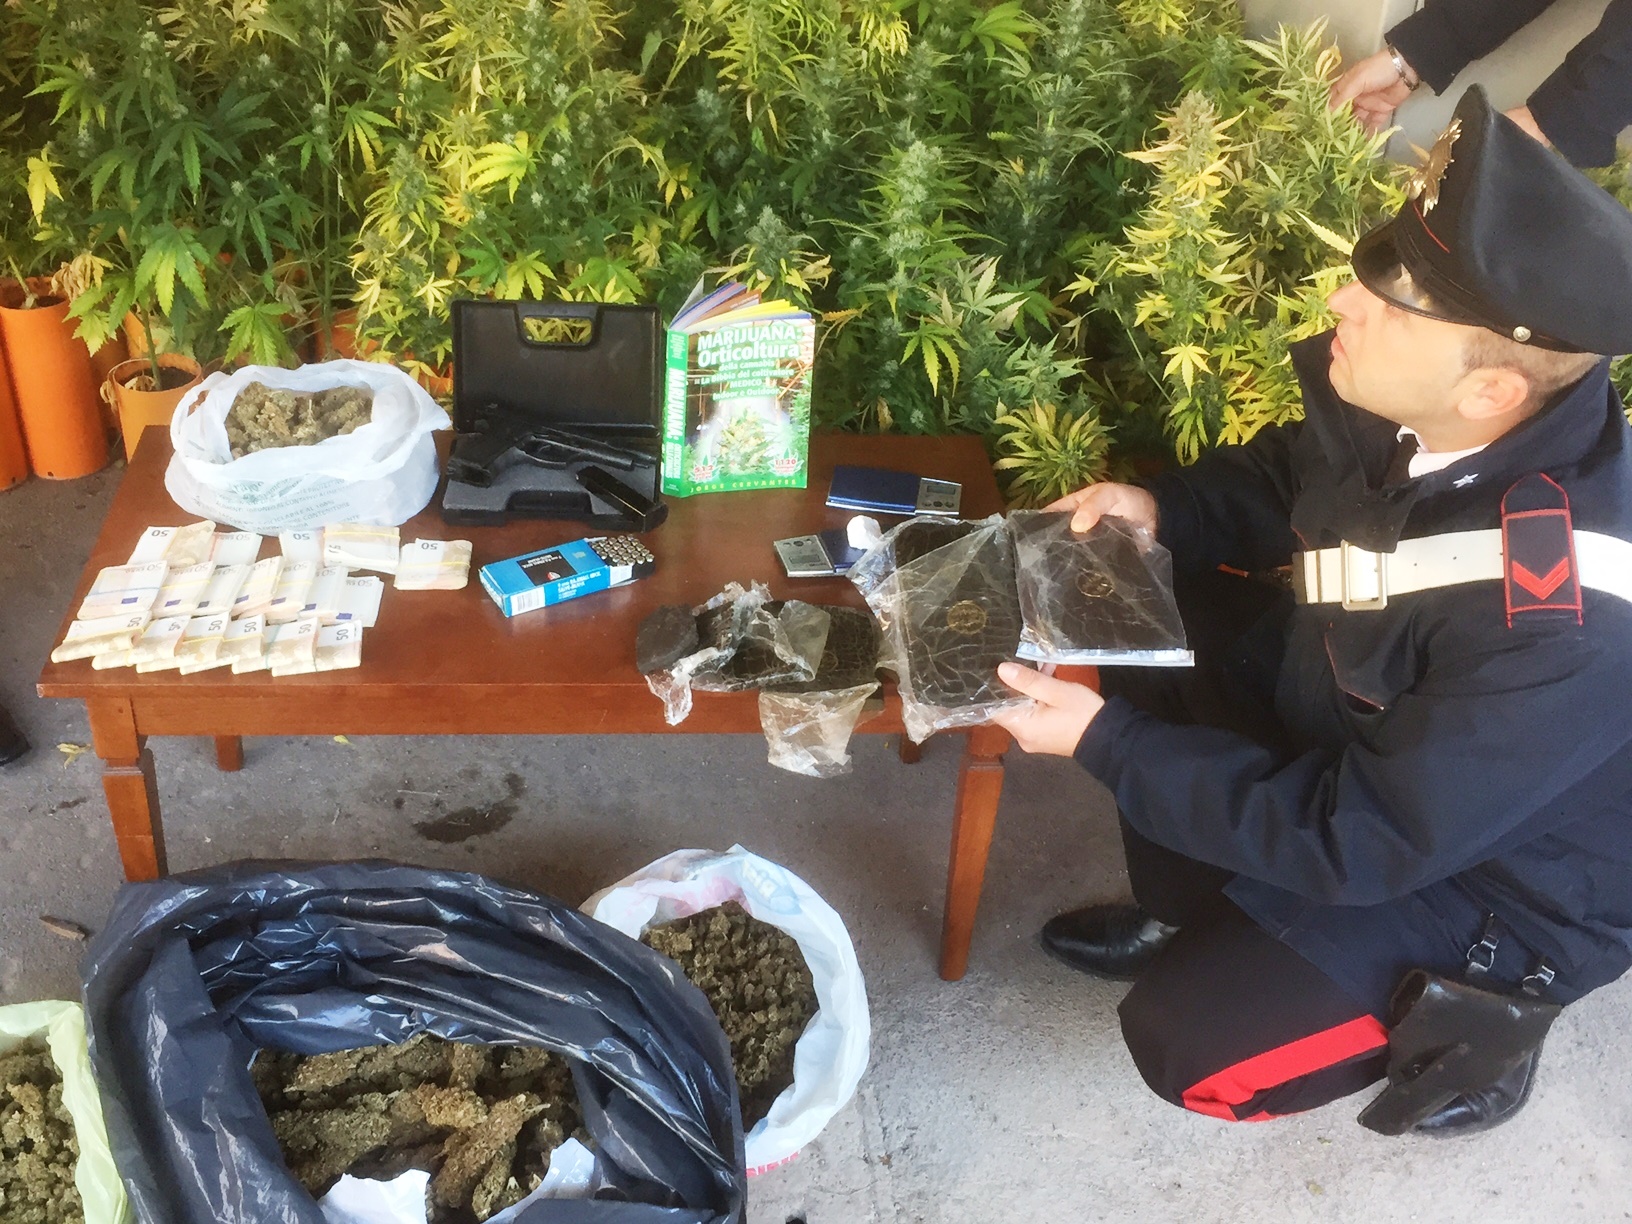 Cassia, carabinieri intervengono dopo l'allarme di furto ma scoprono una piantagione di marijuana